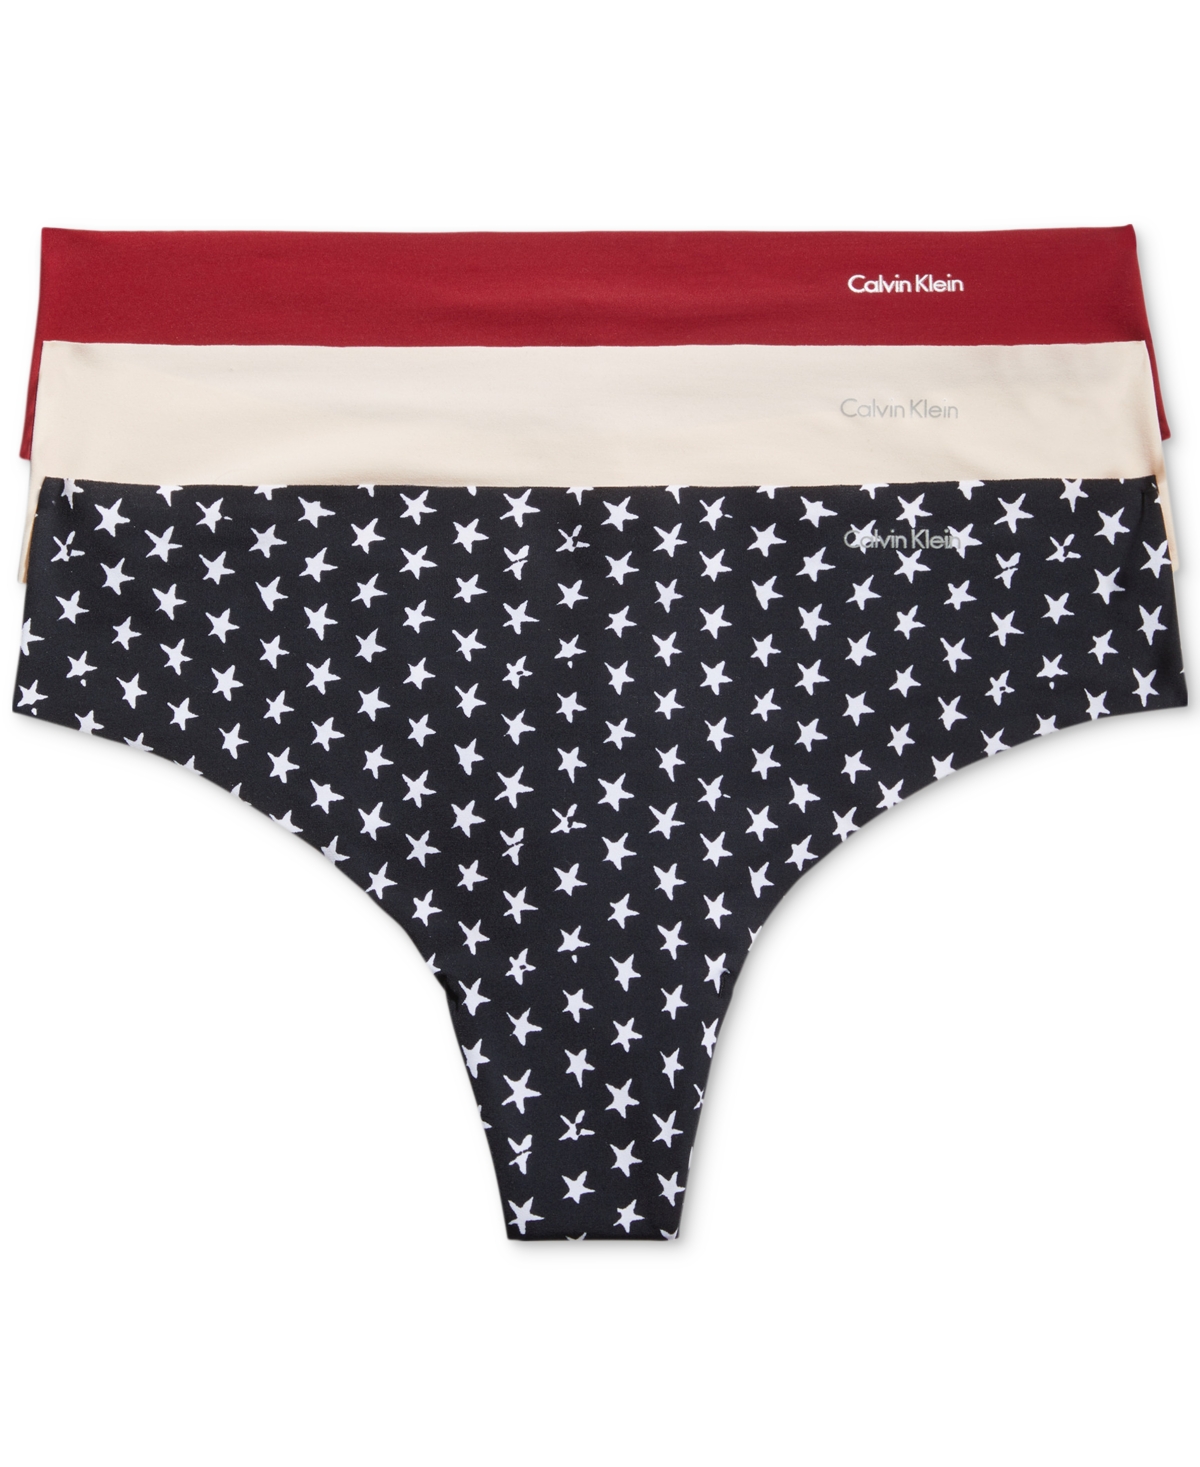 Calvin Klein Women's Invisibles 3-pack Thong Underwear Qd3558 In